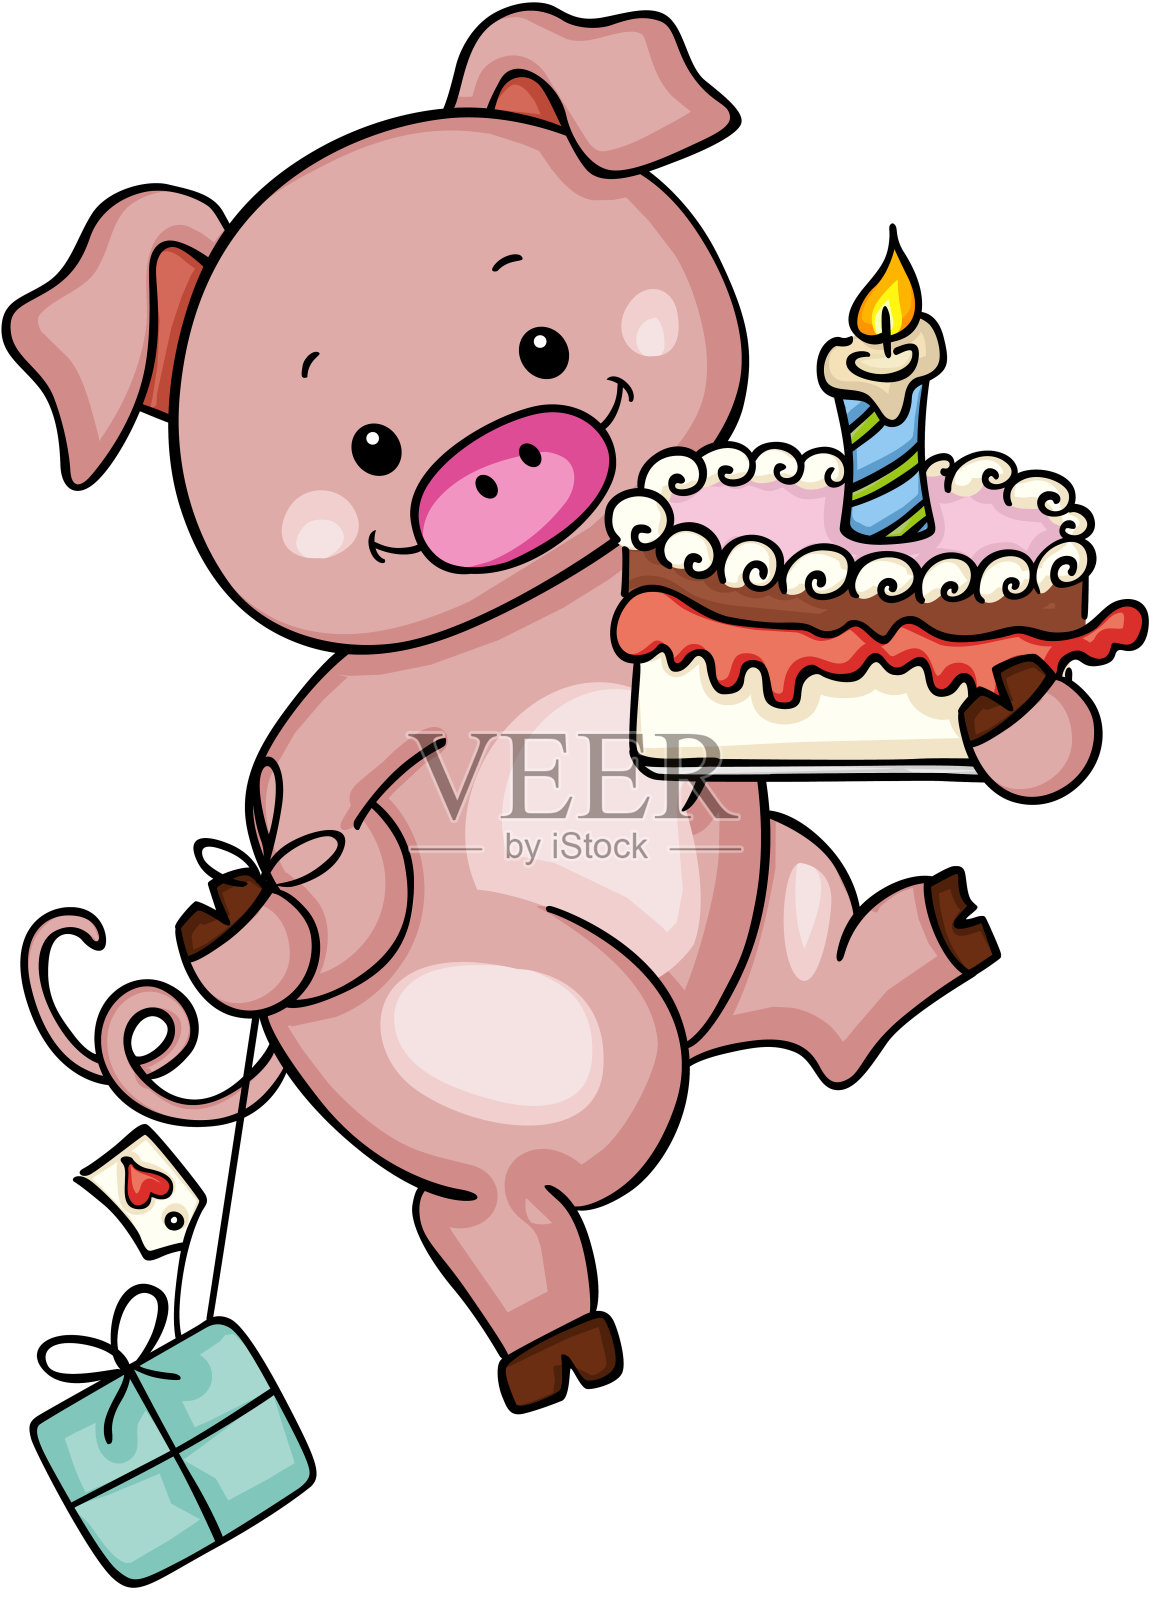 可爱的小猪抱着生日蛋糕和礼物设计模板素材